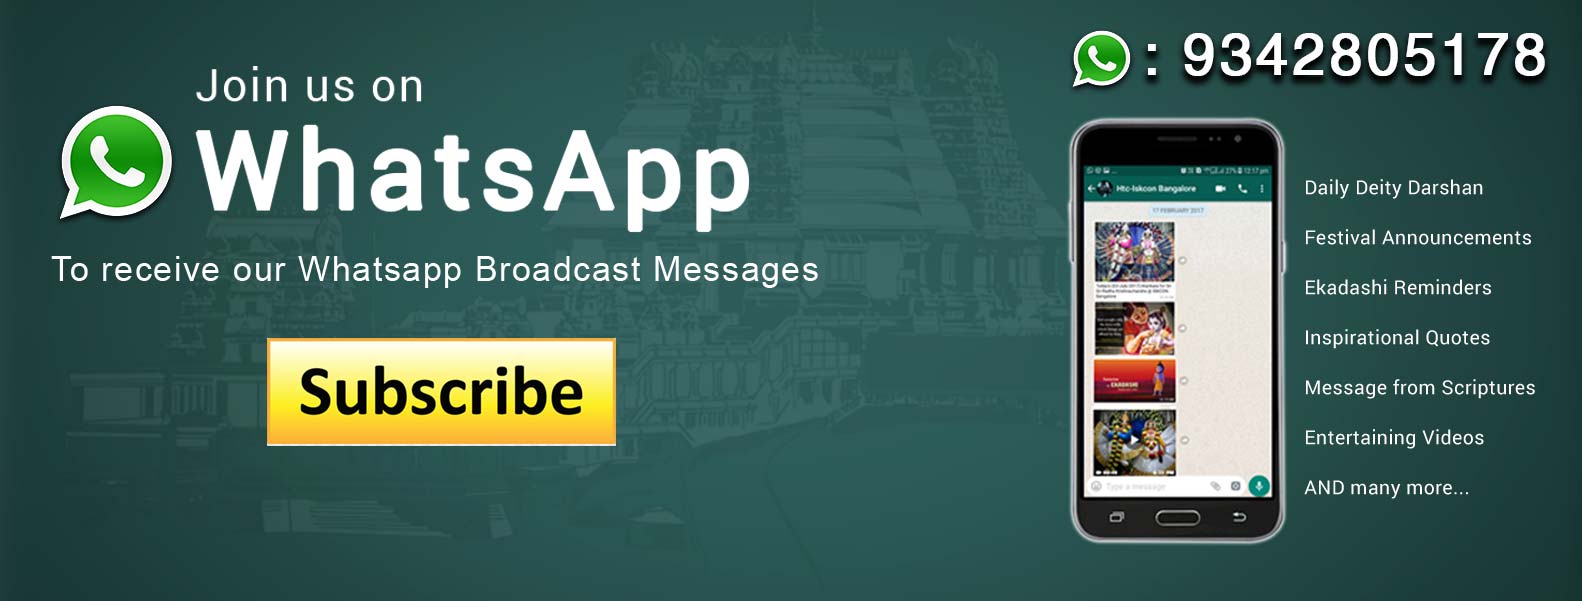 Iskcon Whatsapp Group Subscribe Button Wallpaper